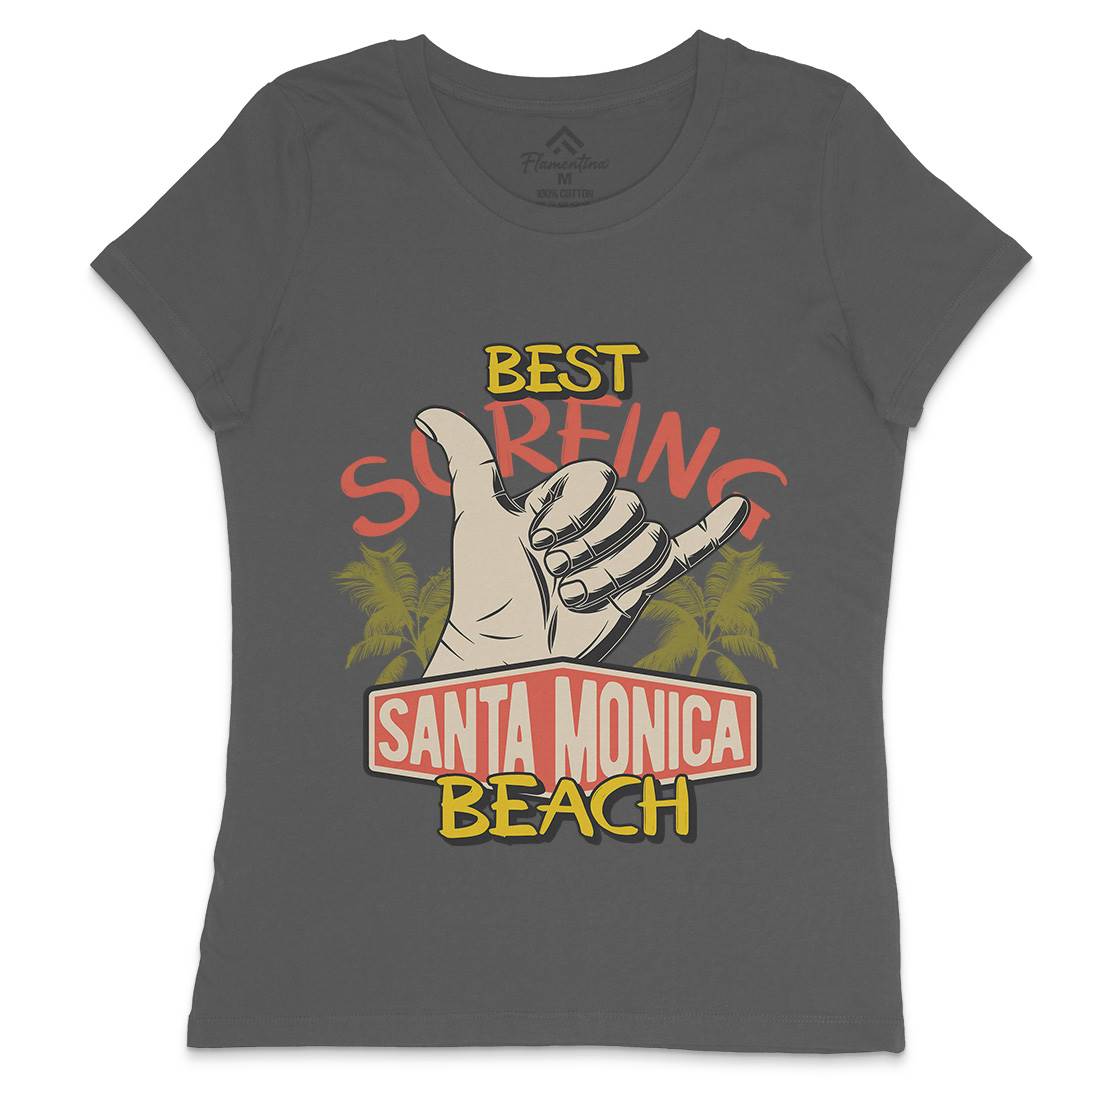 Best Surfing Beach Womens Crew Neck T-Shirt Surf D909